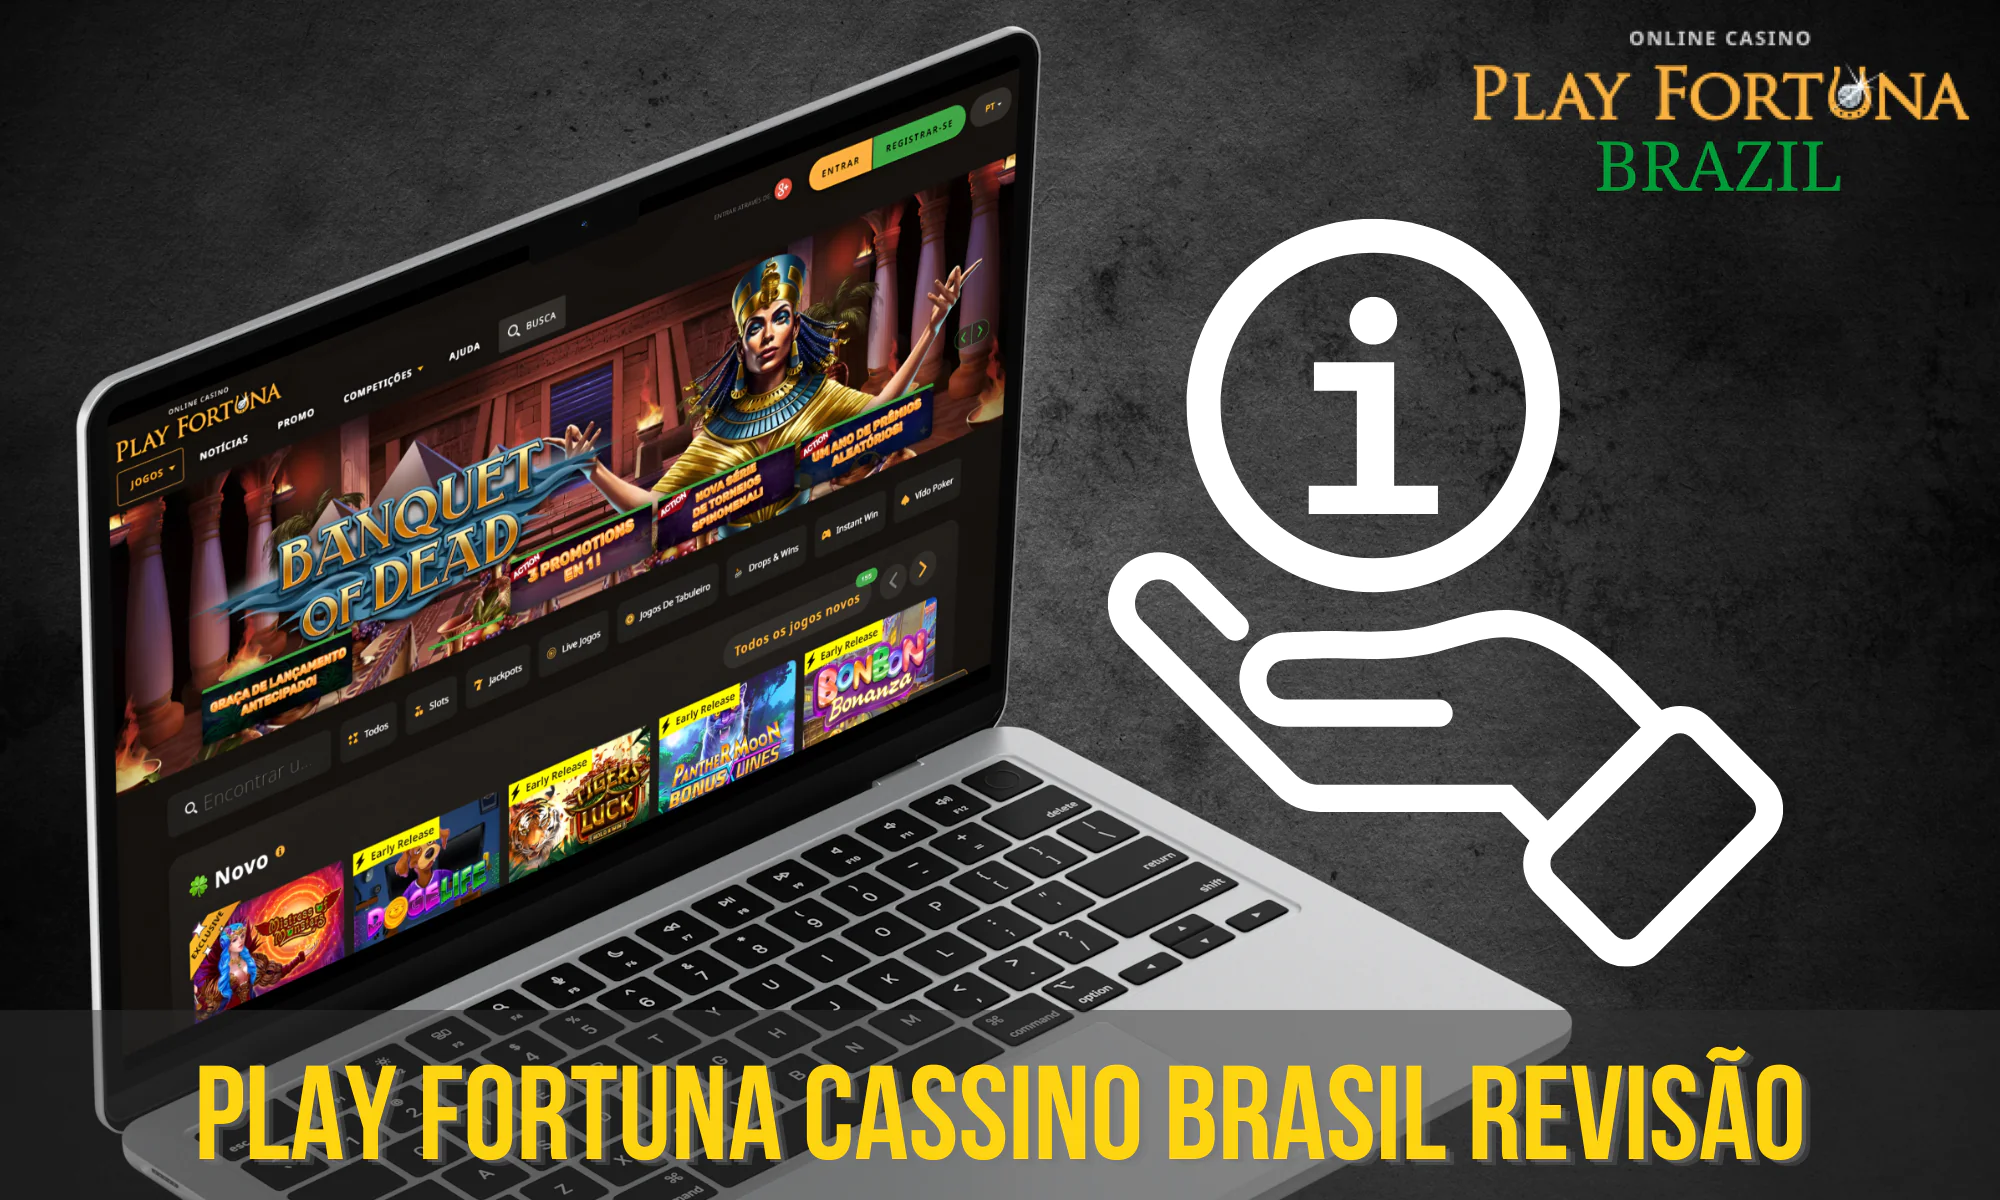 Avaliação detalhada do cassino Play Fortuna no Brasil